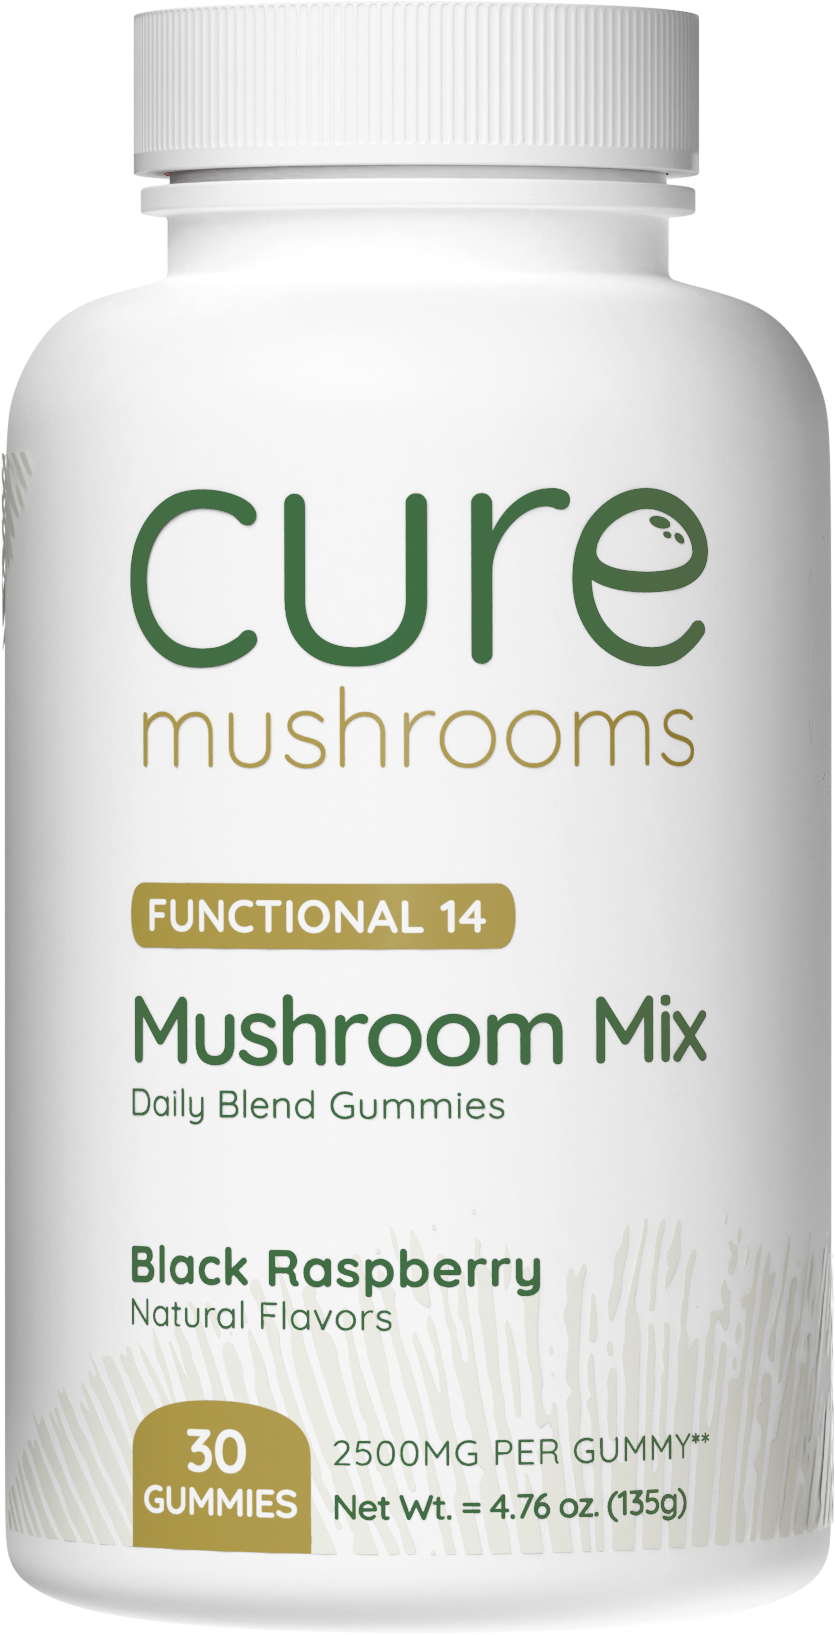 14 mushroom mix mushroom gummies